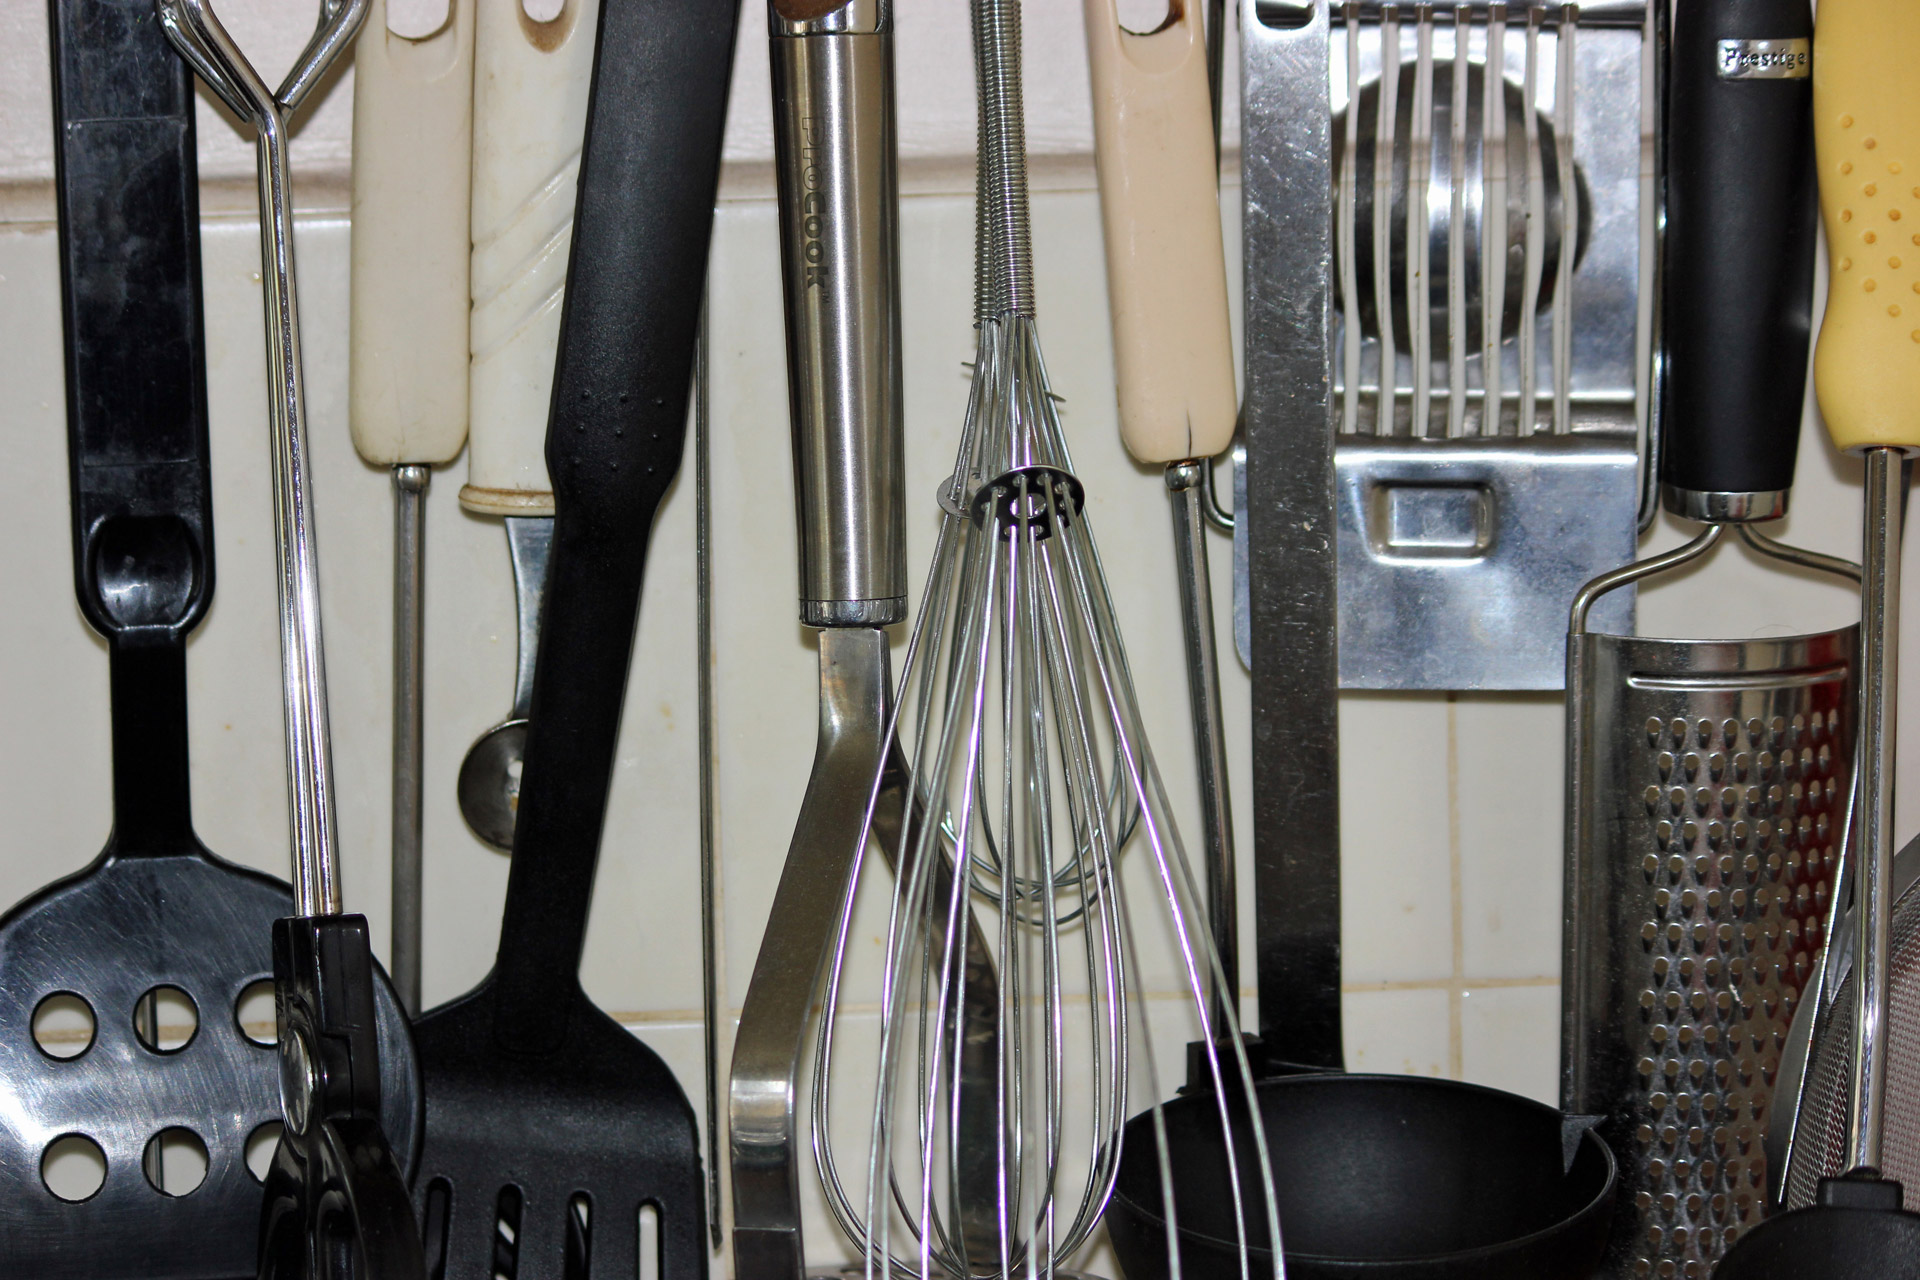 kitchen preparation table utensils